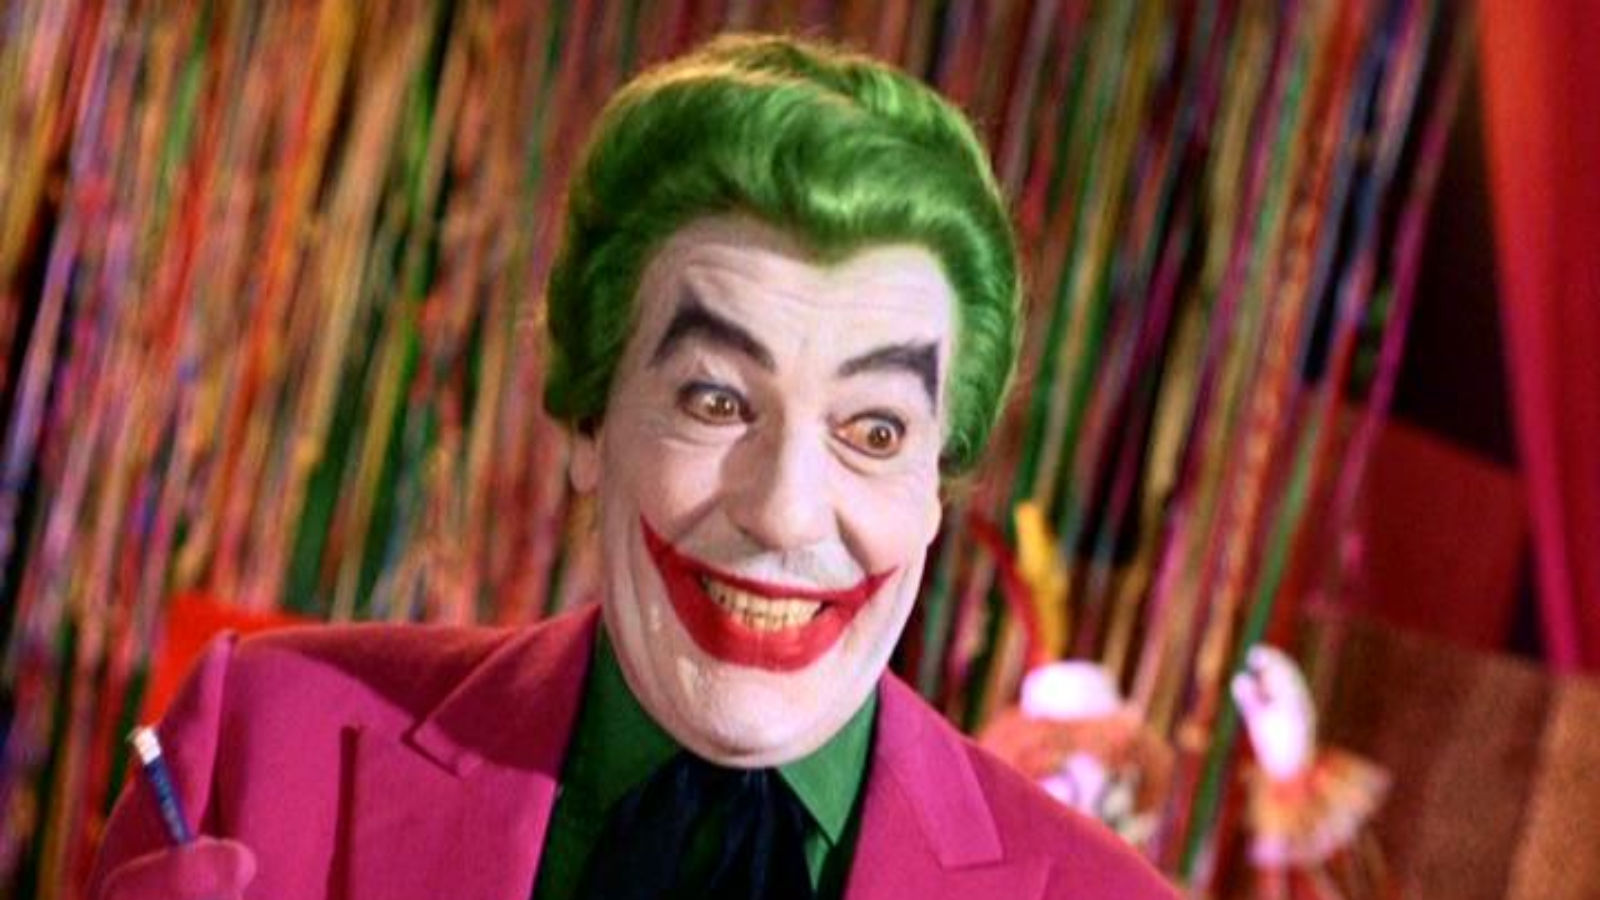 Die Besetzung der Gotham TV Show ist Joker